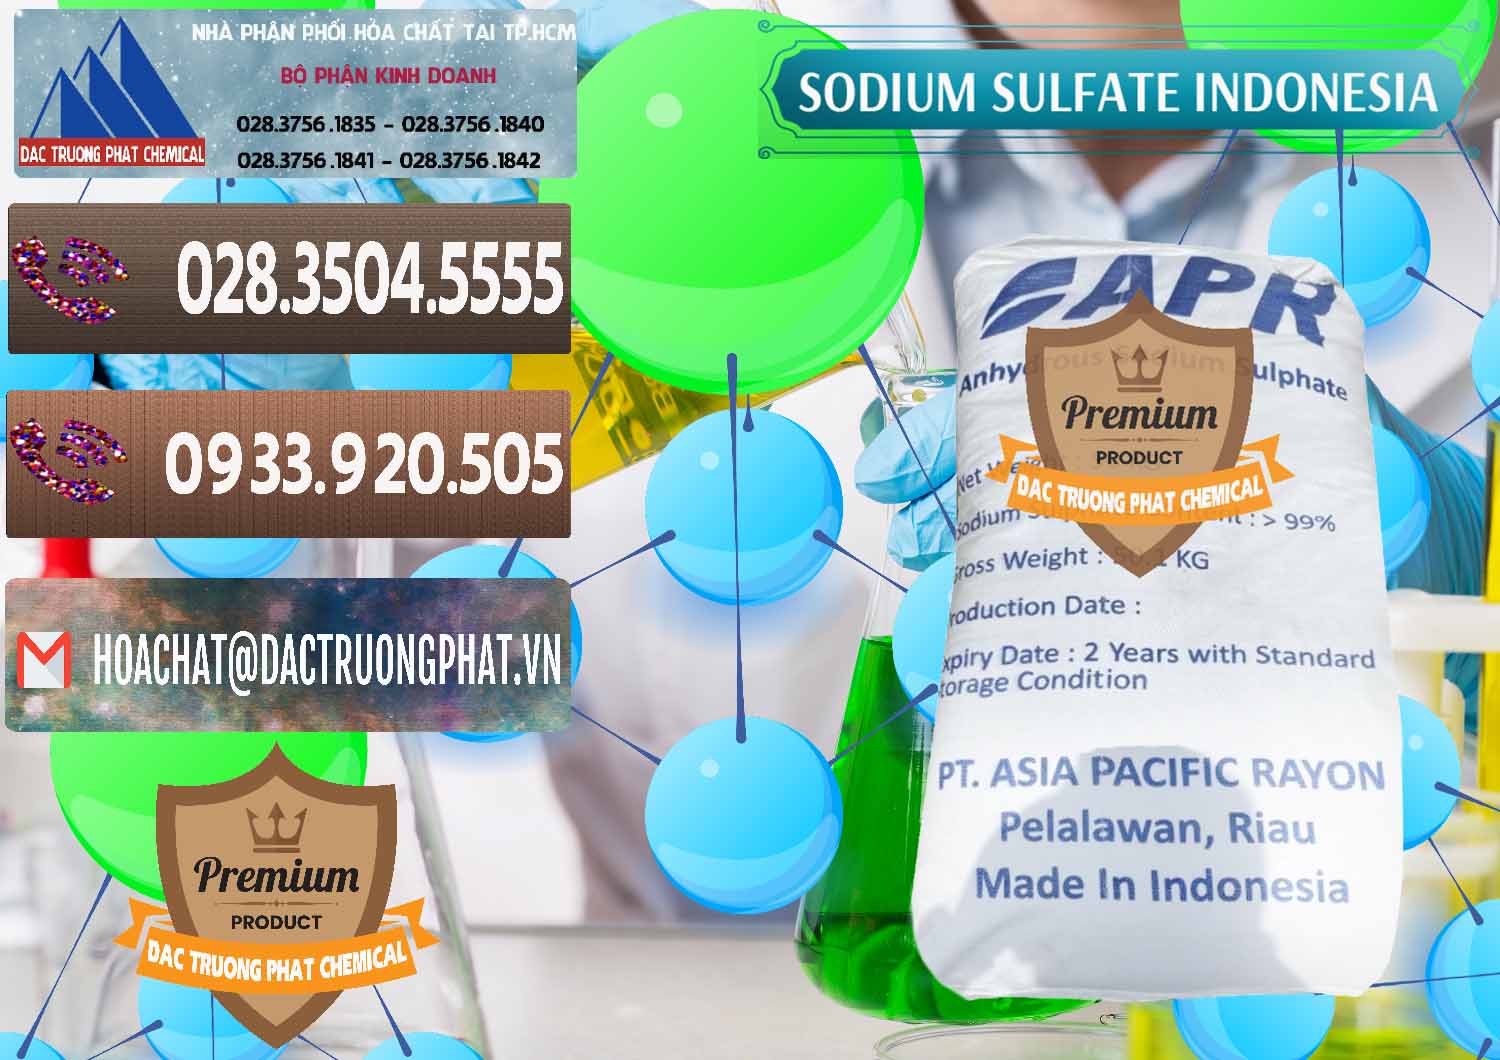 Chuyên bán - cung cấp Sodium Sulphate - Muối Sunfat Na2SO4 APR Indonesia - 0460 - Công ty phân phối - nhập khẩu hóa chất tại TP.HCM - hoachatviet.net